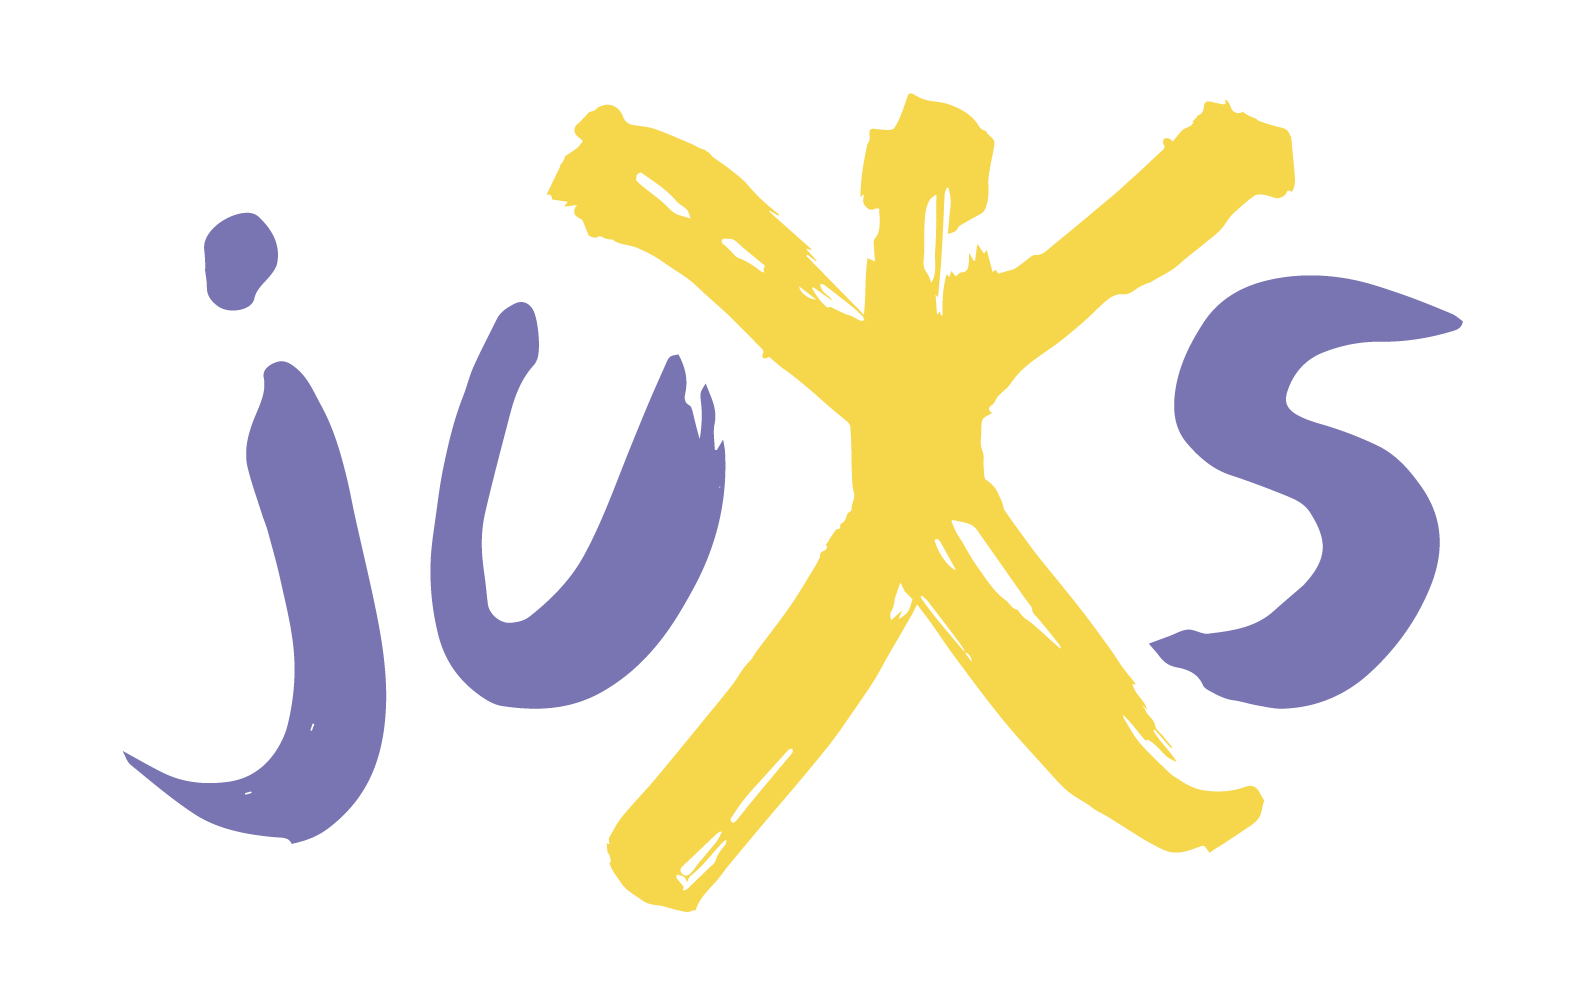 Logo der Jugendkunstschule: die 4 Buchstaben J U K und S, das K ist stilisiert als Strichmännchen